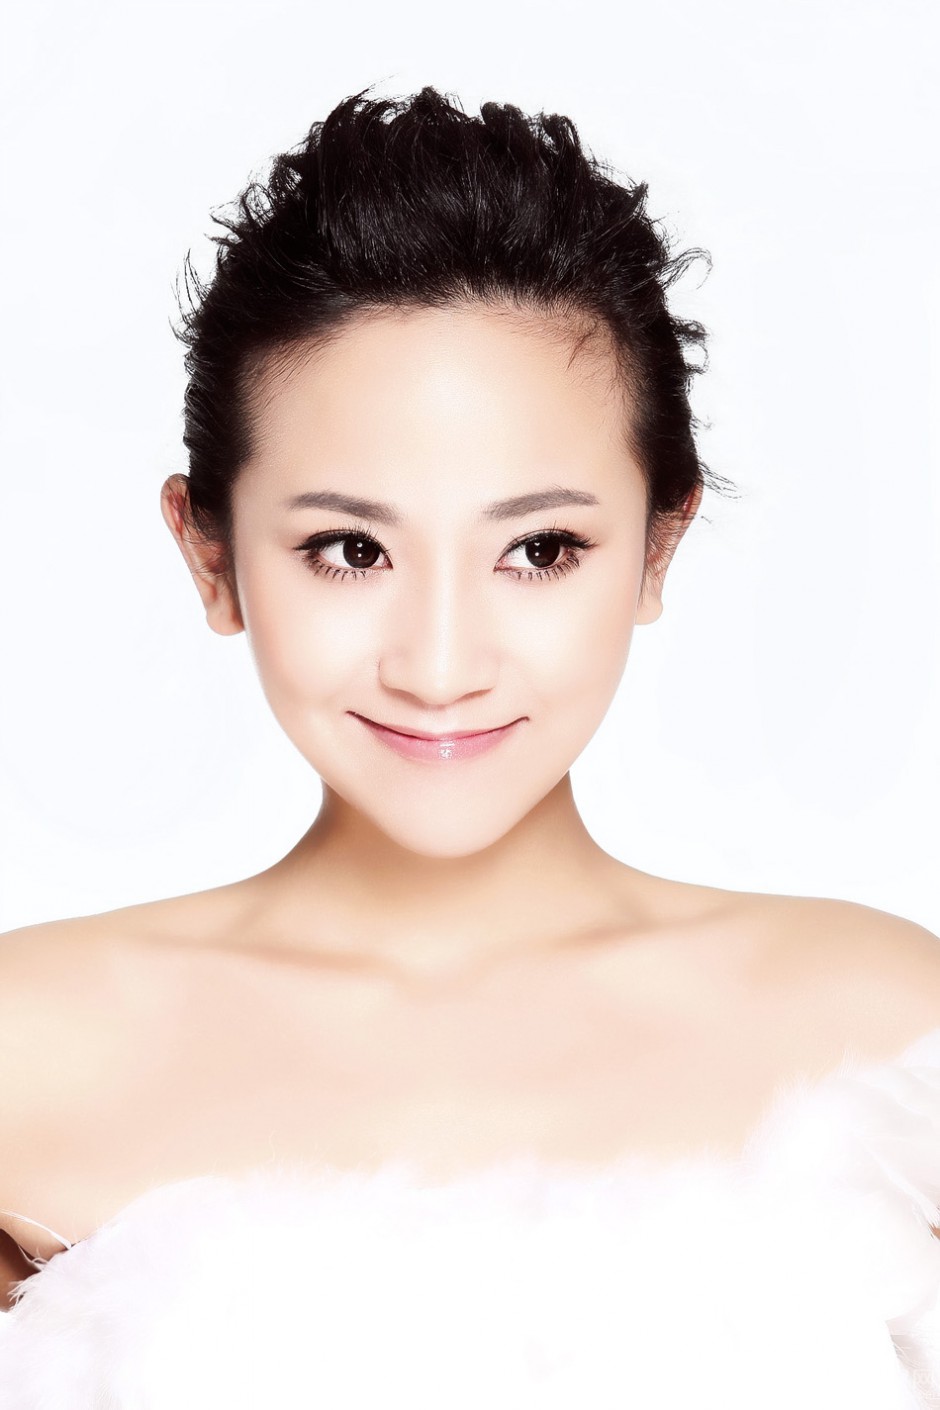 中国最漂亮女演员解惠清靓丽写真